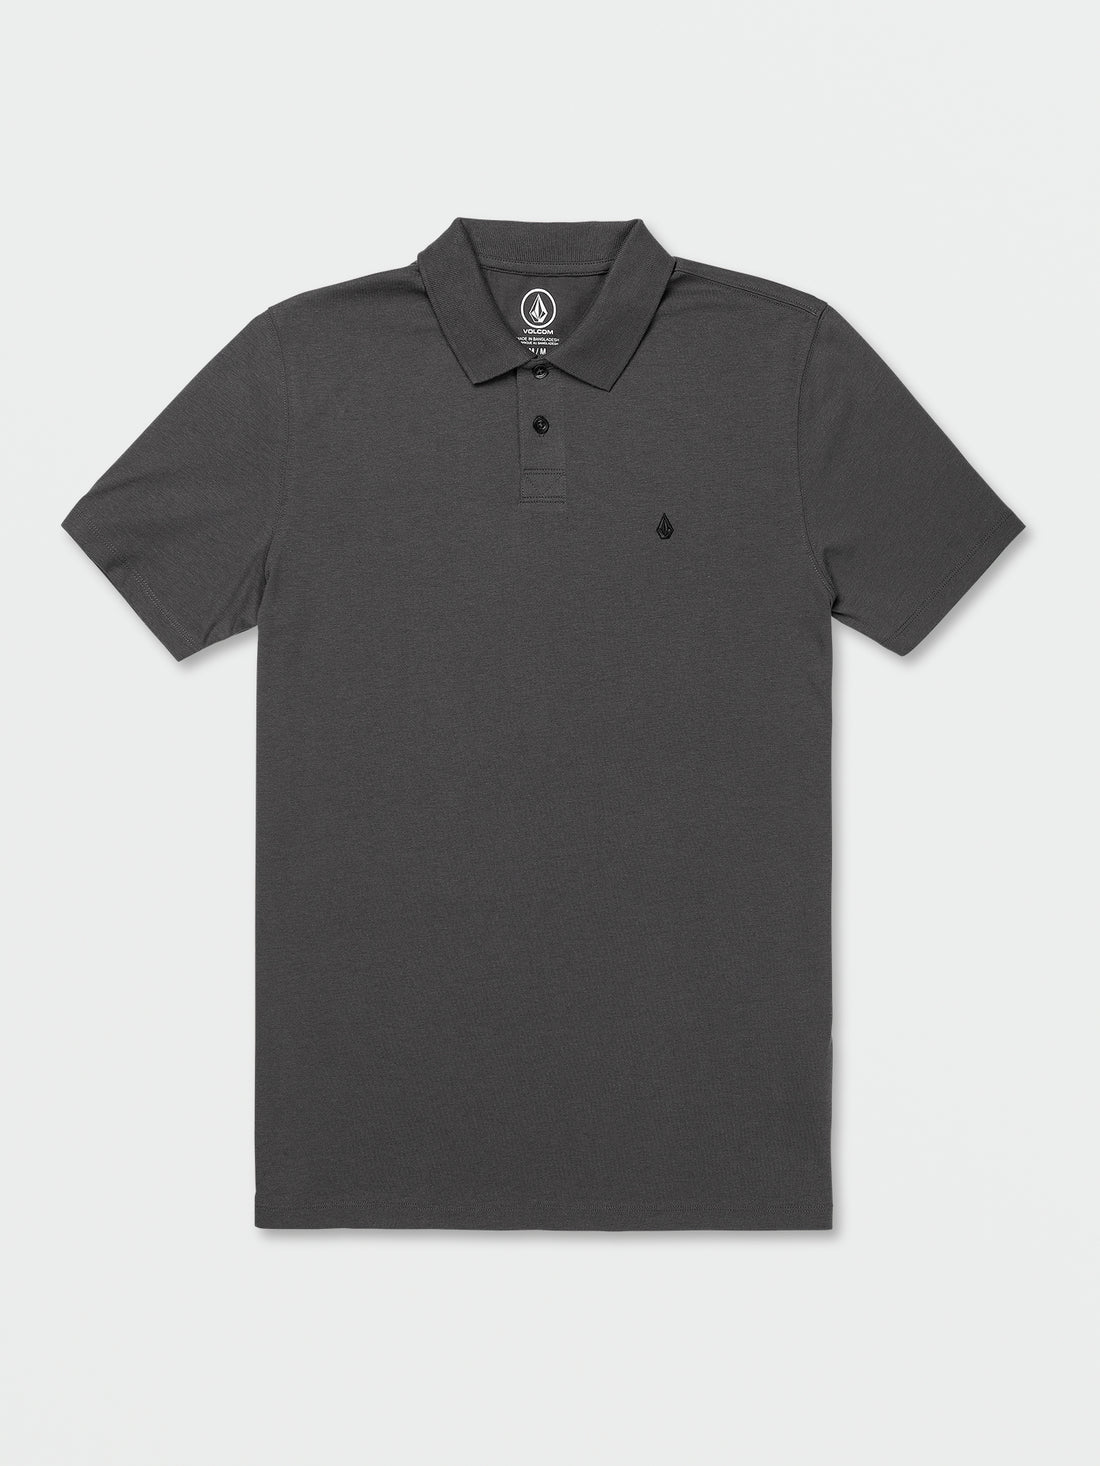 Middler Polo Short Sleeve Shirt - Asphalt Black